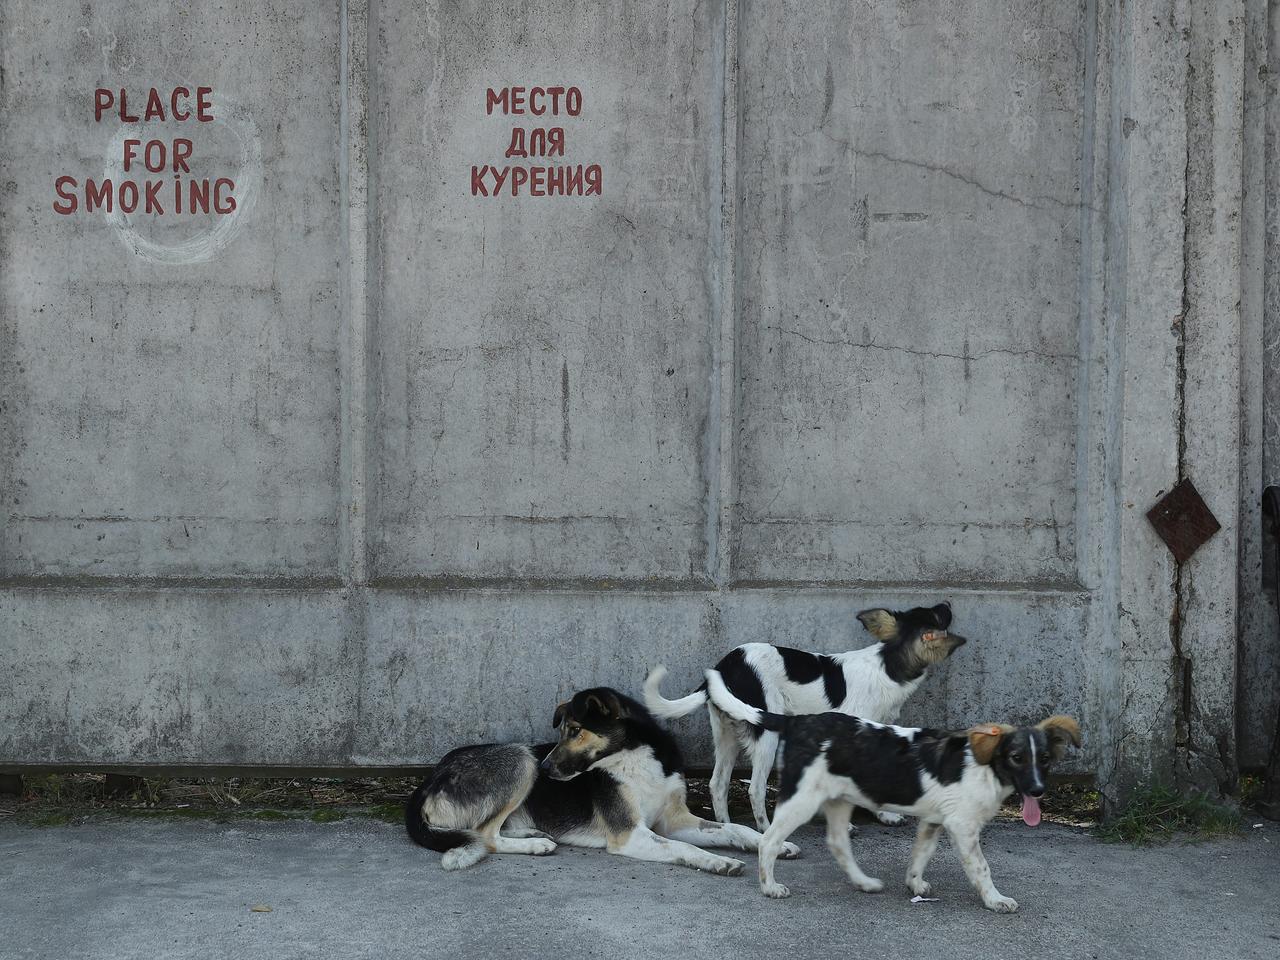 2017年8月19日、ウクライナにあるチェルノブイリ原子力発電所のカフェテリアの外をうろつく野良犬。調査のためにタグが付けられている。